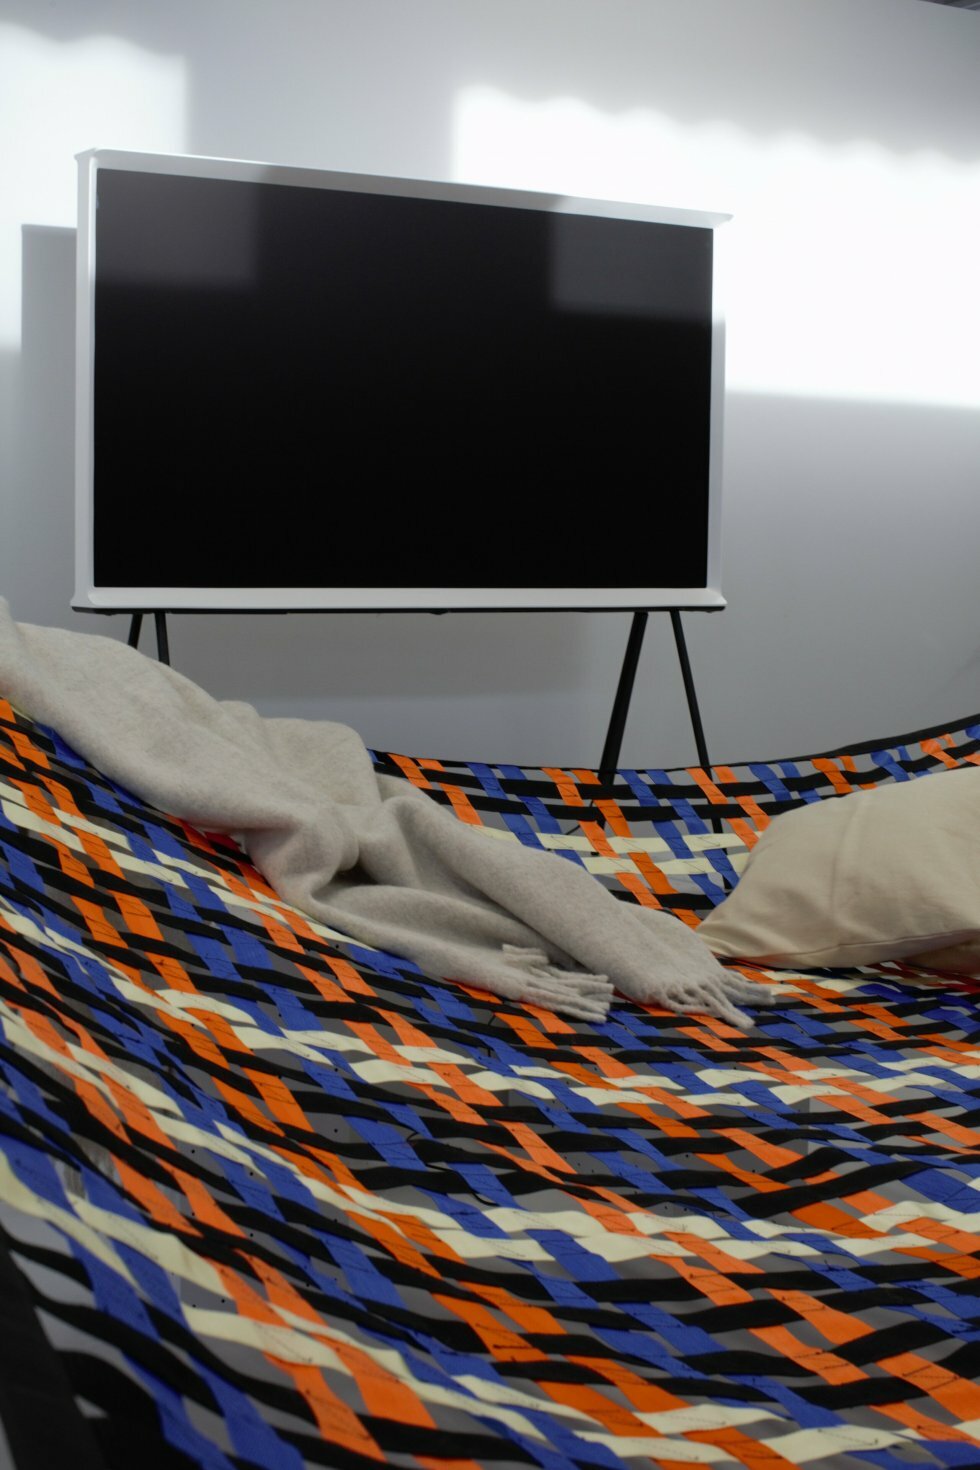 Samsung SHIFT - Form Us With Love og Samsung har lavet et sofakoncept, der egentlig er en hængekøje